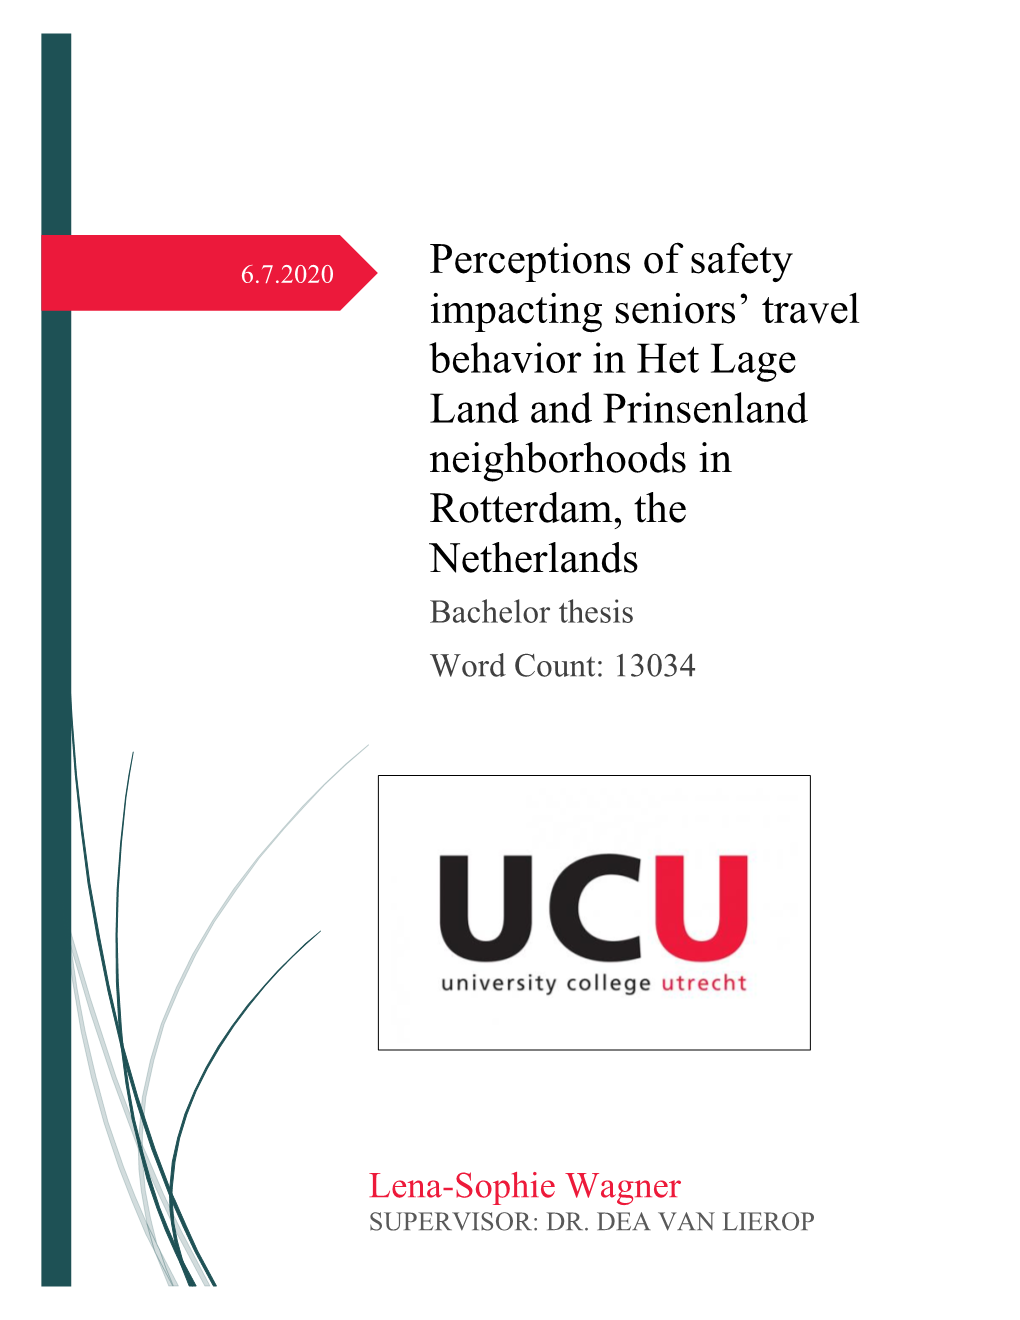 Perceptions of Safety Impacting Seniors' Travel Behavior in Het Lage